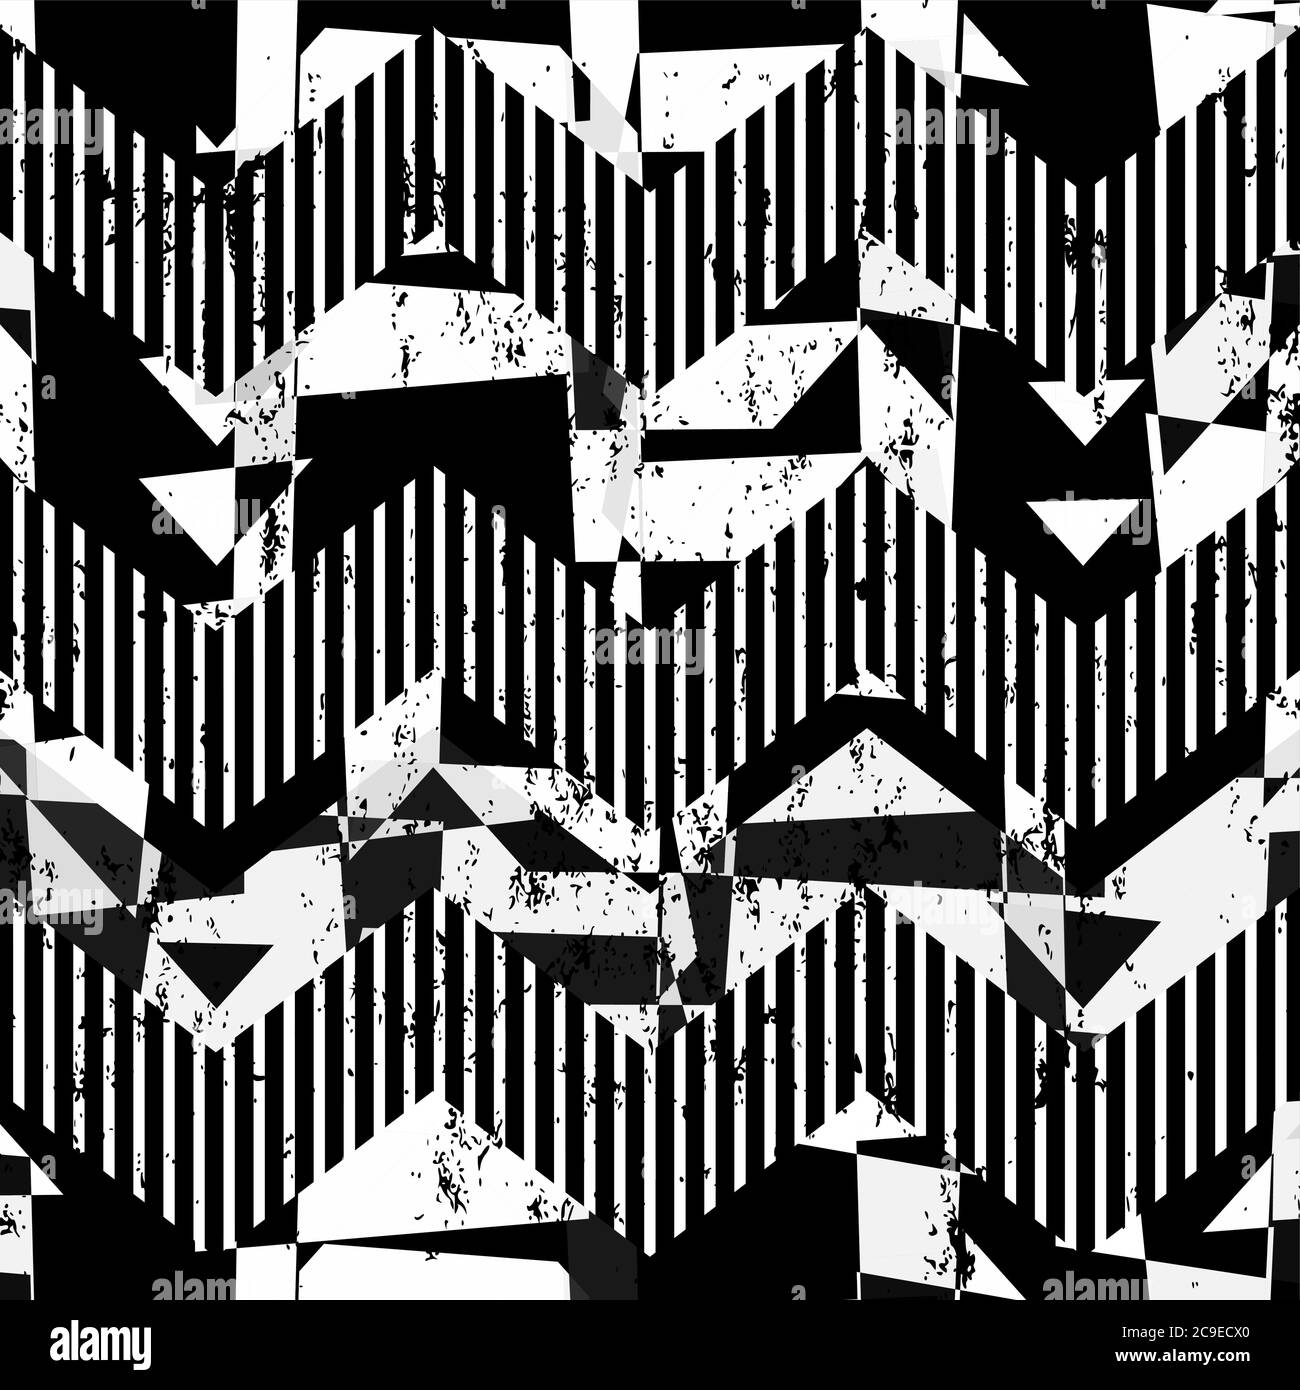 Abstraktes Hintergrundmuster, mit Quadraten, Dreiecken, Striche und Spritzer, schwarz und weiß, Zickzack Stock Vektor